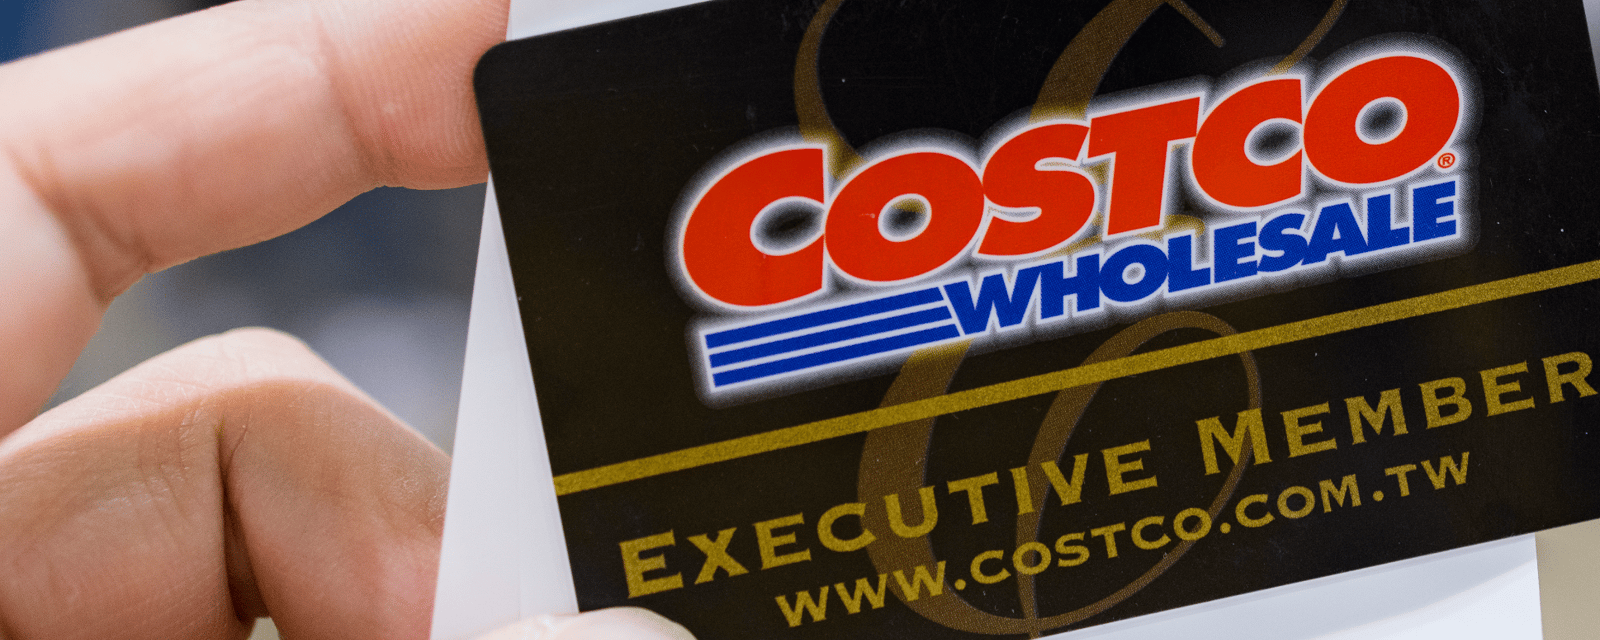 Costco est en train d'implanter des scanneurs à l'entrée de ses magasins